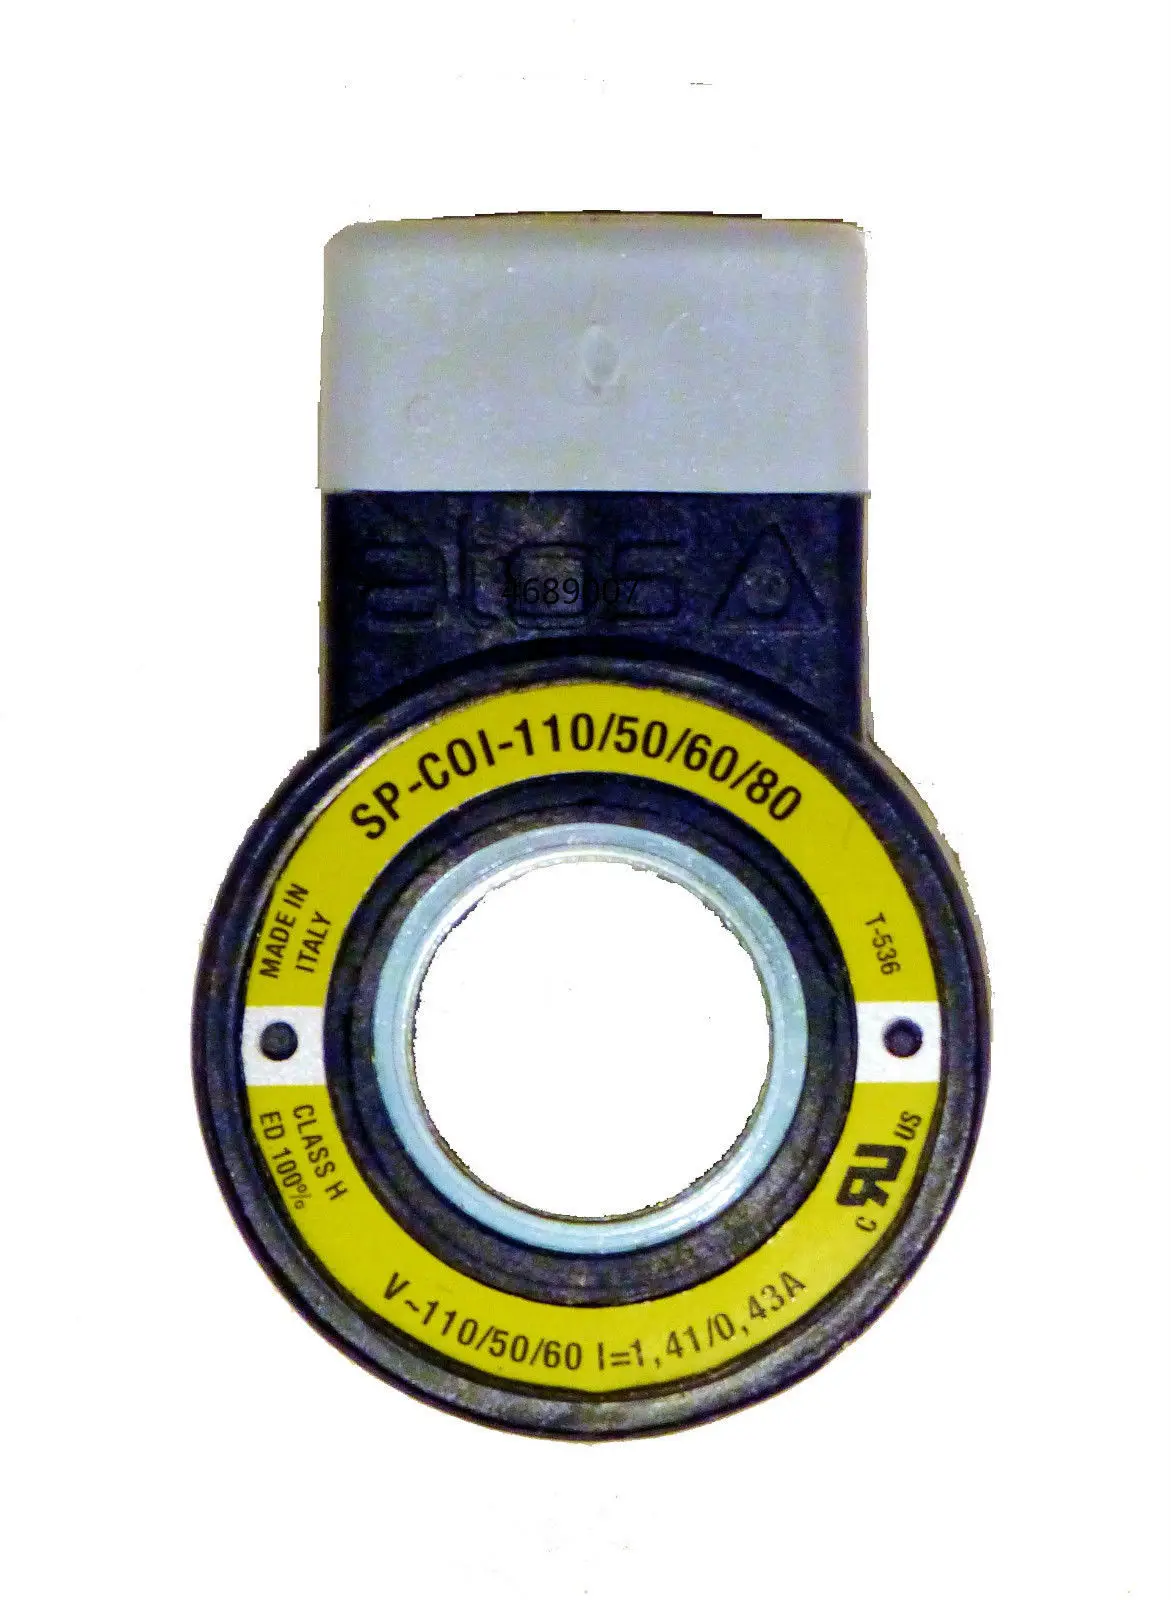 Фото SP-COI-110/50/60/80 AC Atos магнит-шпуле Ventil соленоидная катушка клапан SP-C01-110/50/60/80 |